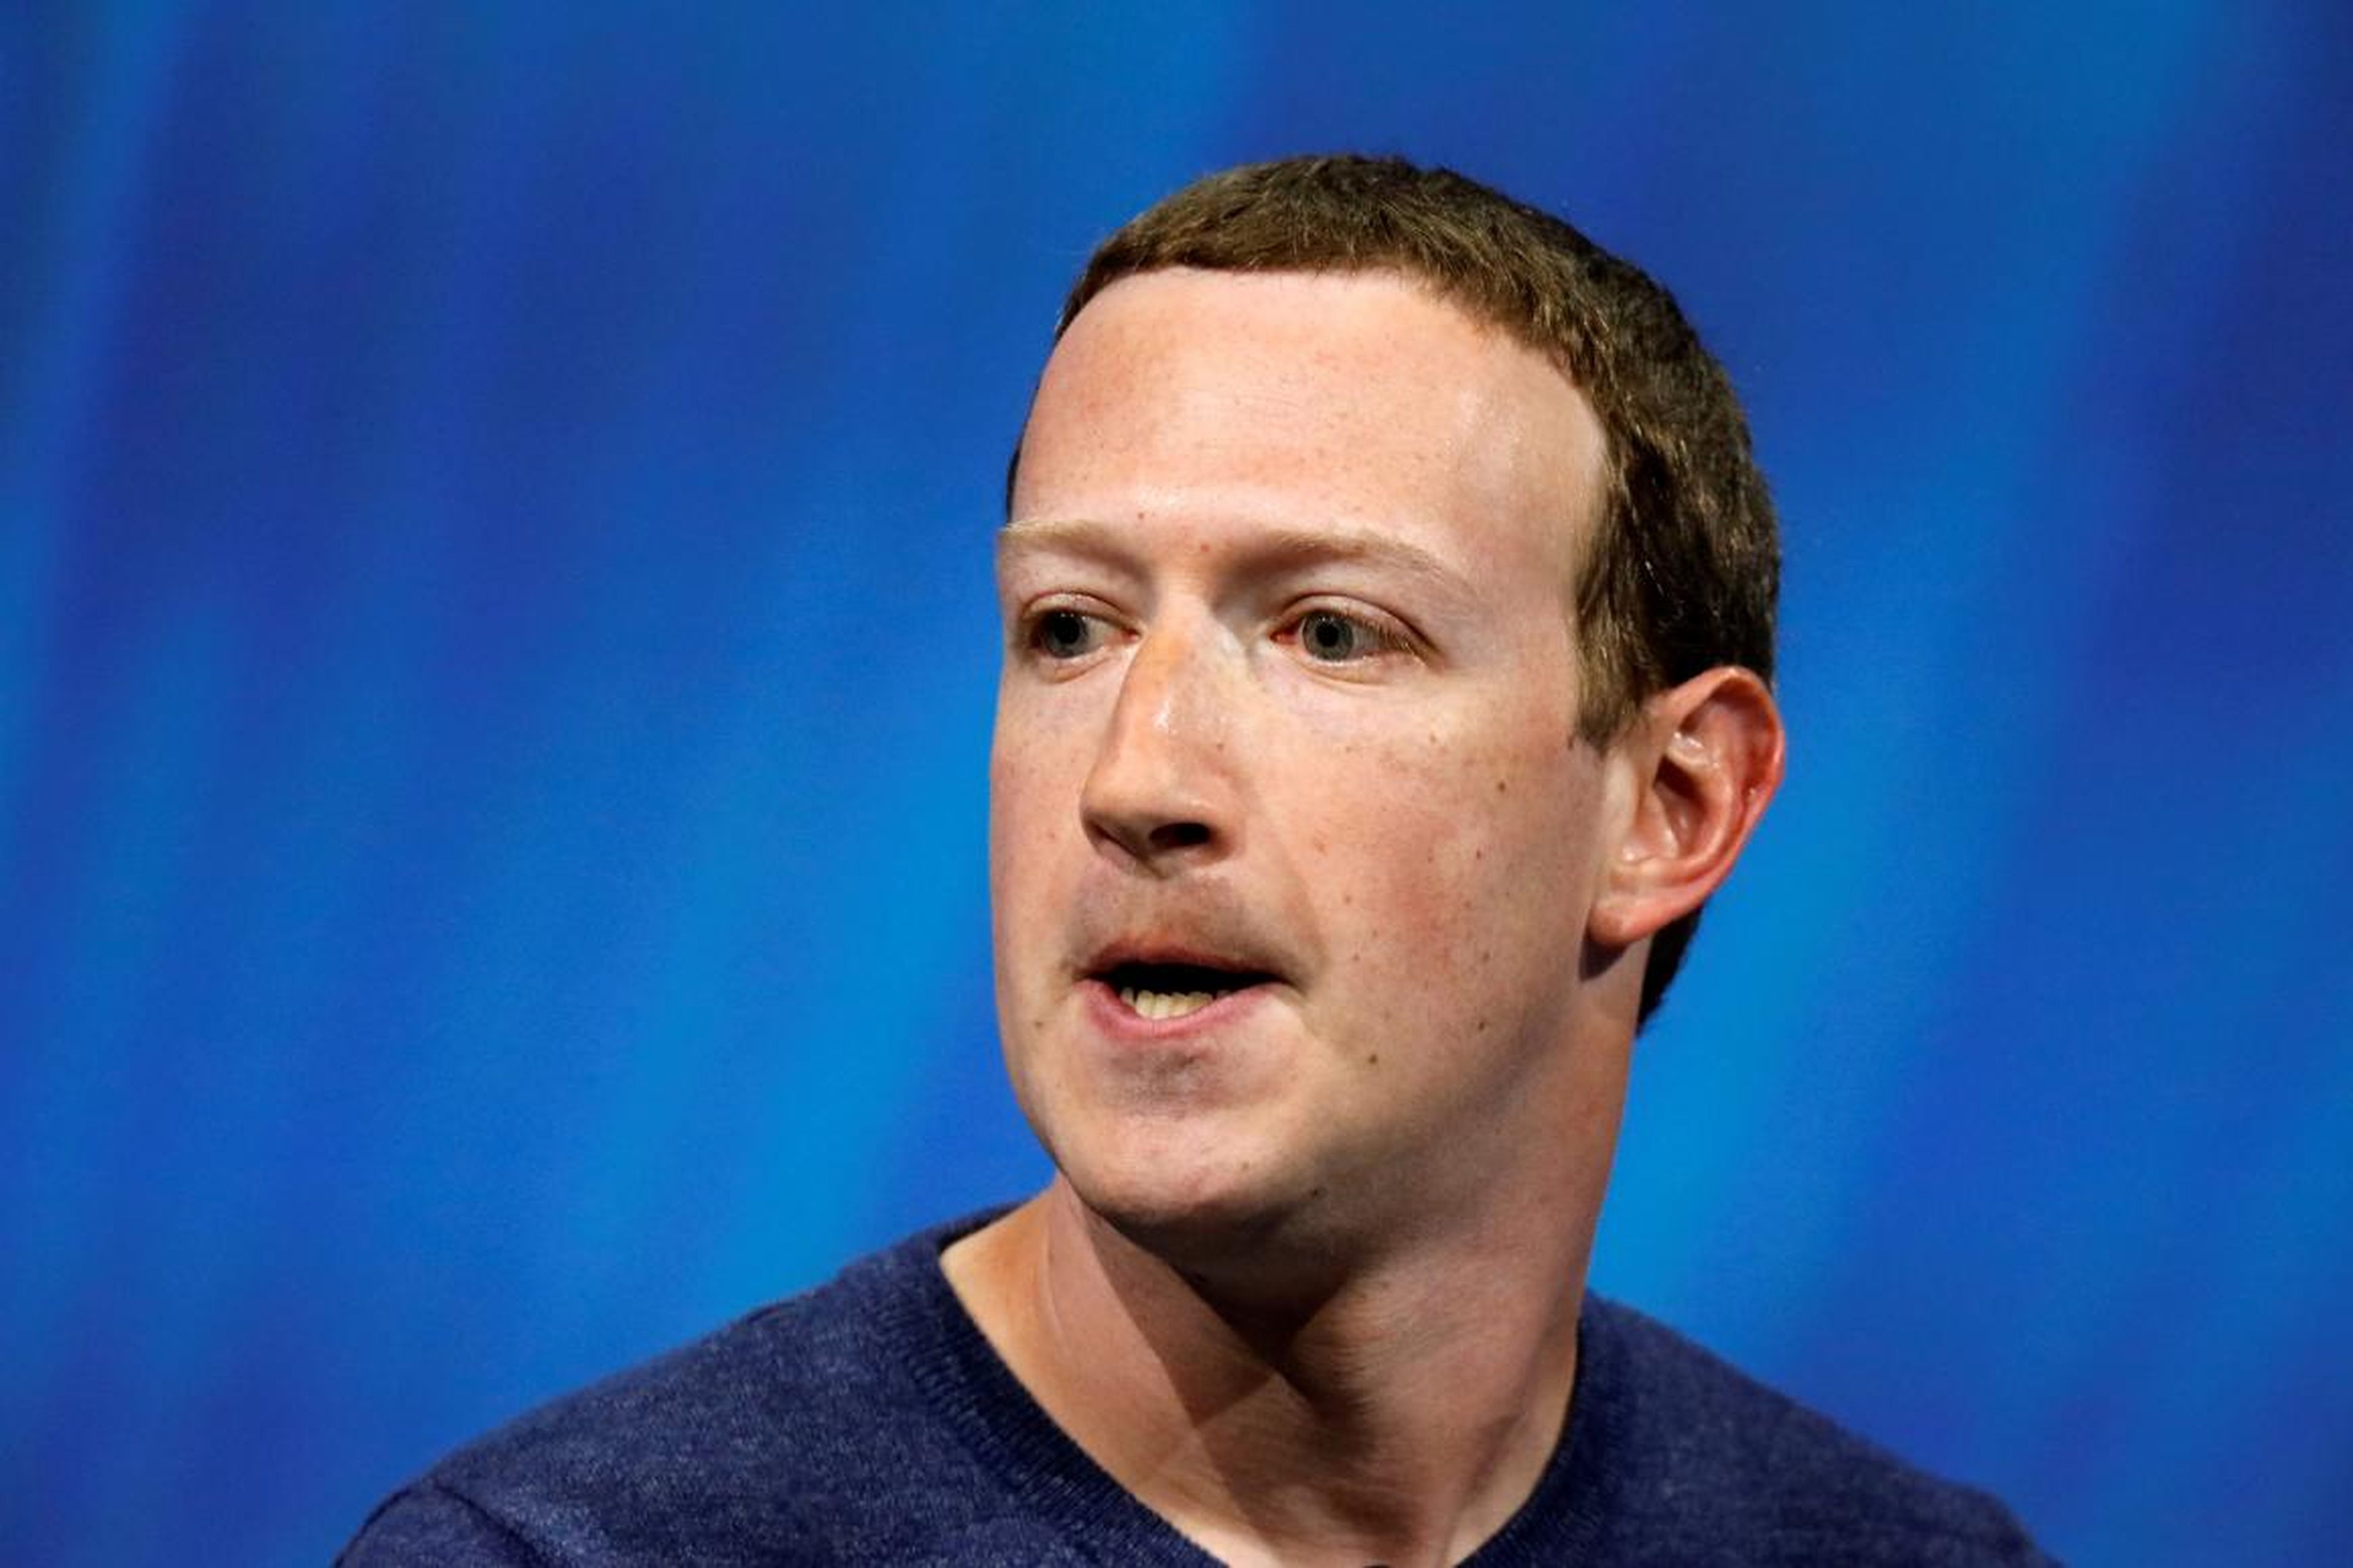 Mark Zuckerberg — CEO and cofounder of Facebook